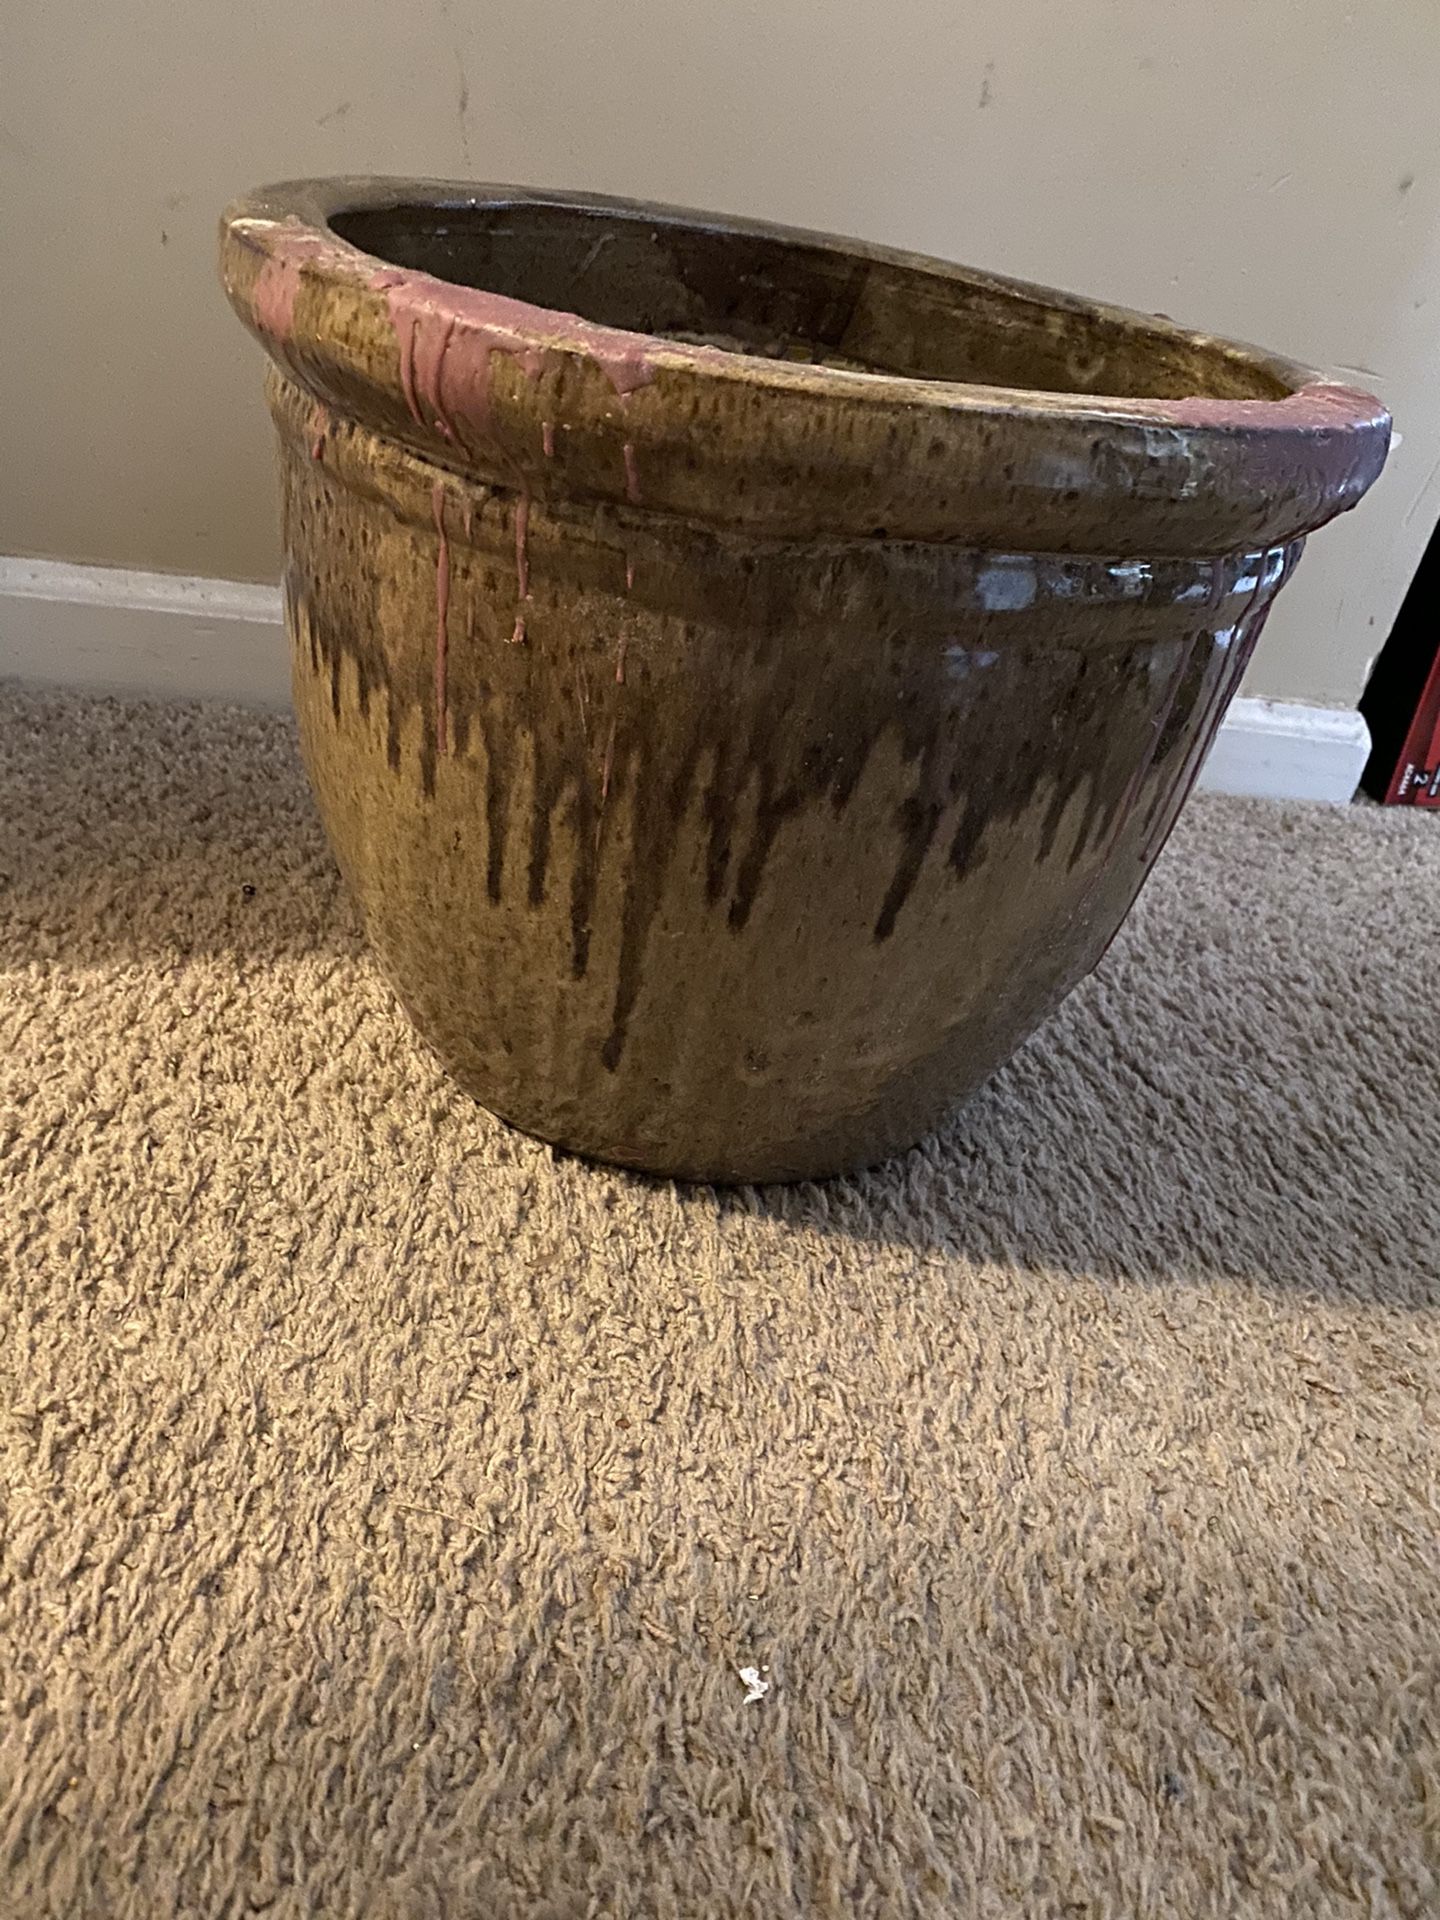 Flower Pot For Sell.. Asking $35